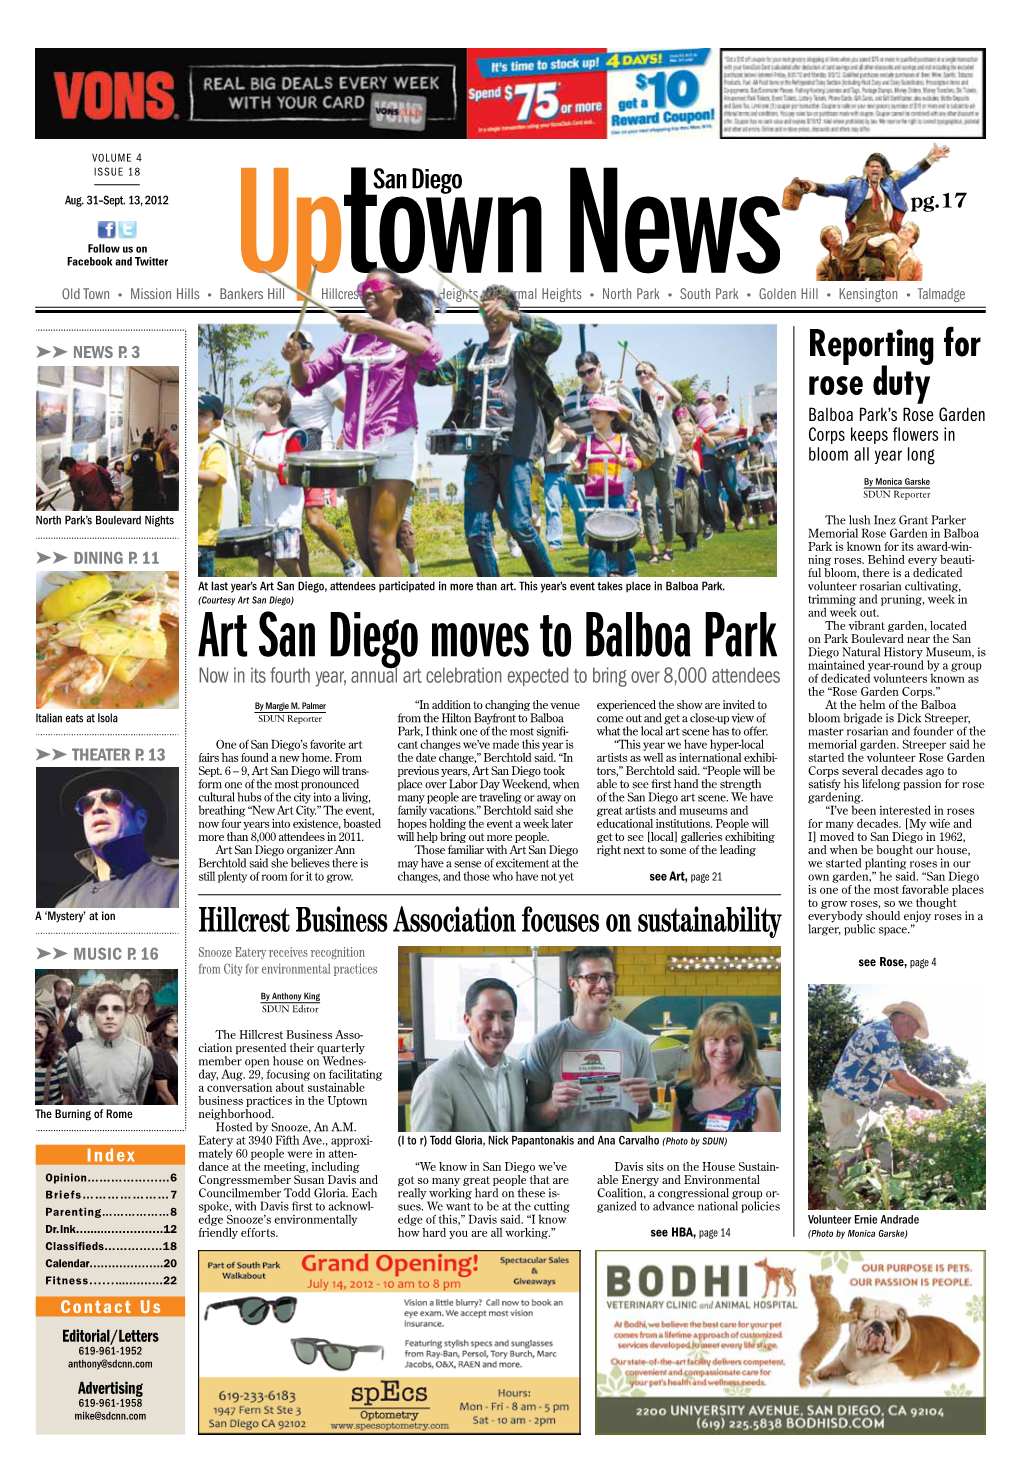 Art San Diego Moves to Balboa Park